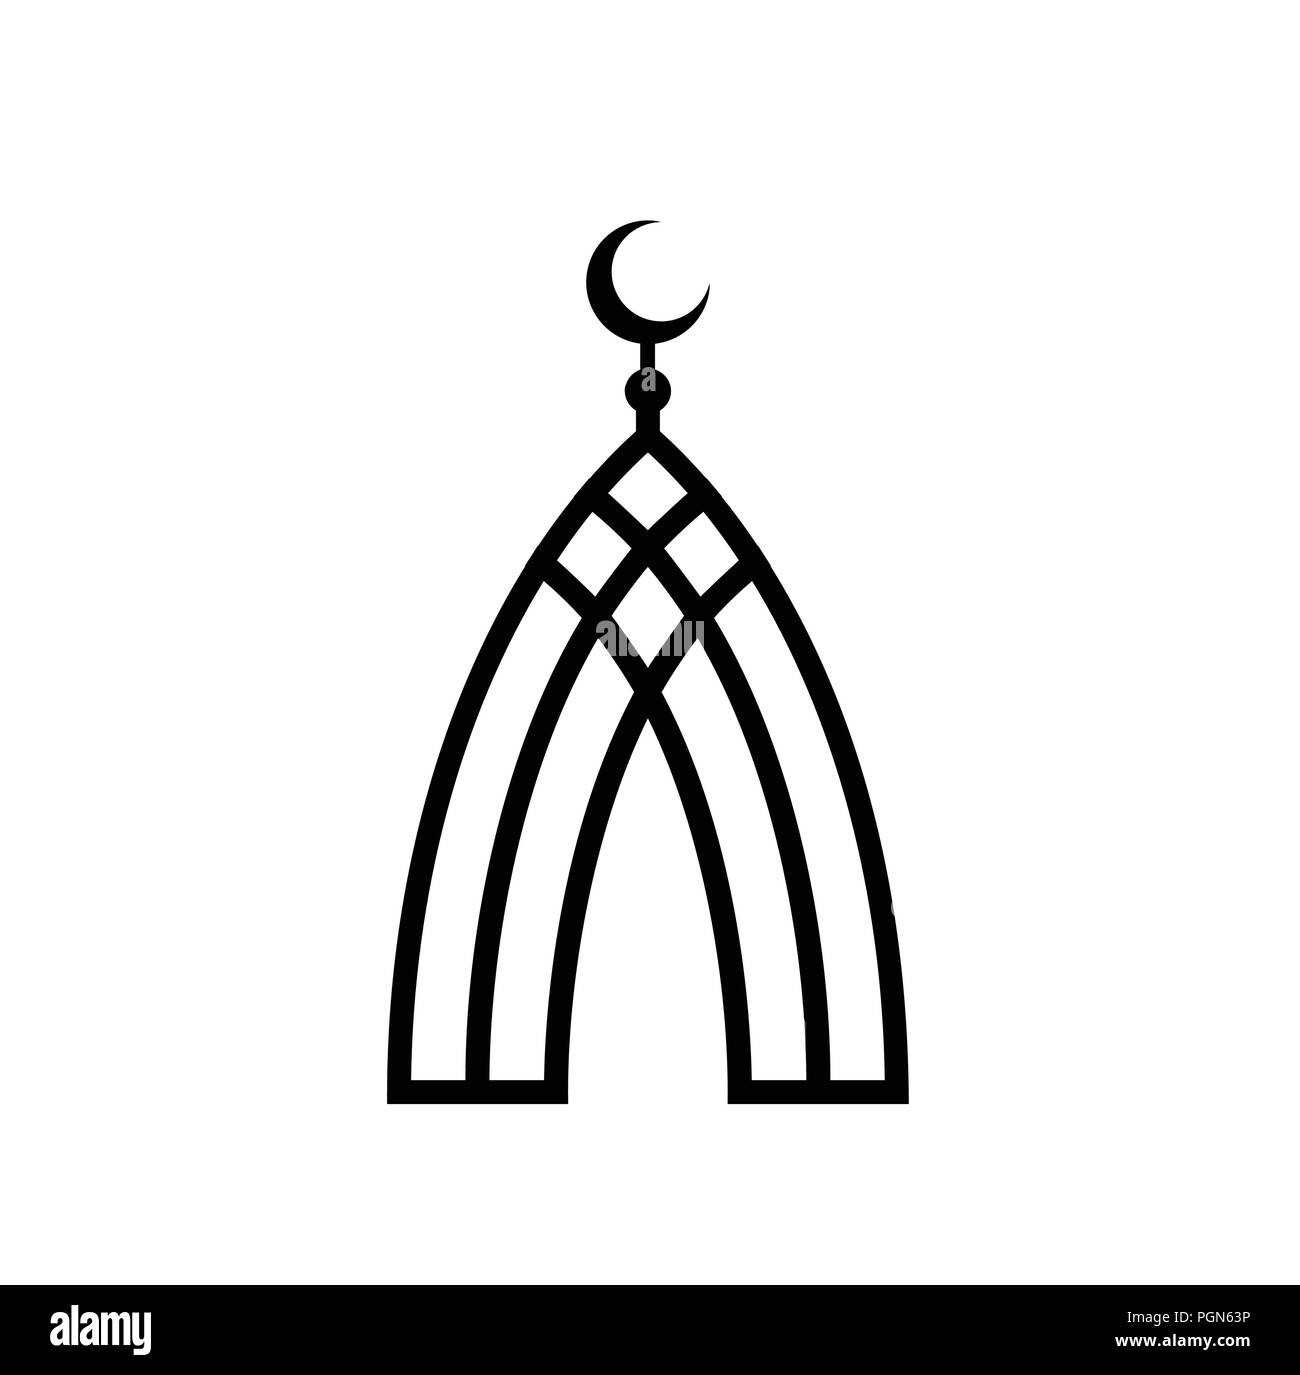 La moschea di linee nere. L'Islam simbolo. Mezzaluna islamica icona vettore. Religione musulmana logo piatto modello. La religione casa semplice piatto simbolo su sfondo bianco. Illustrazione Vettoriale